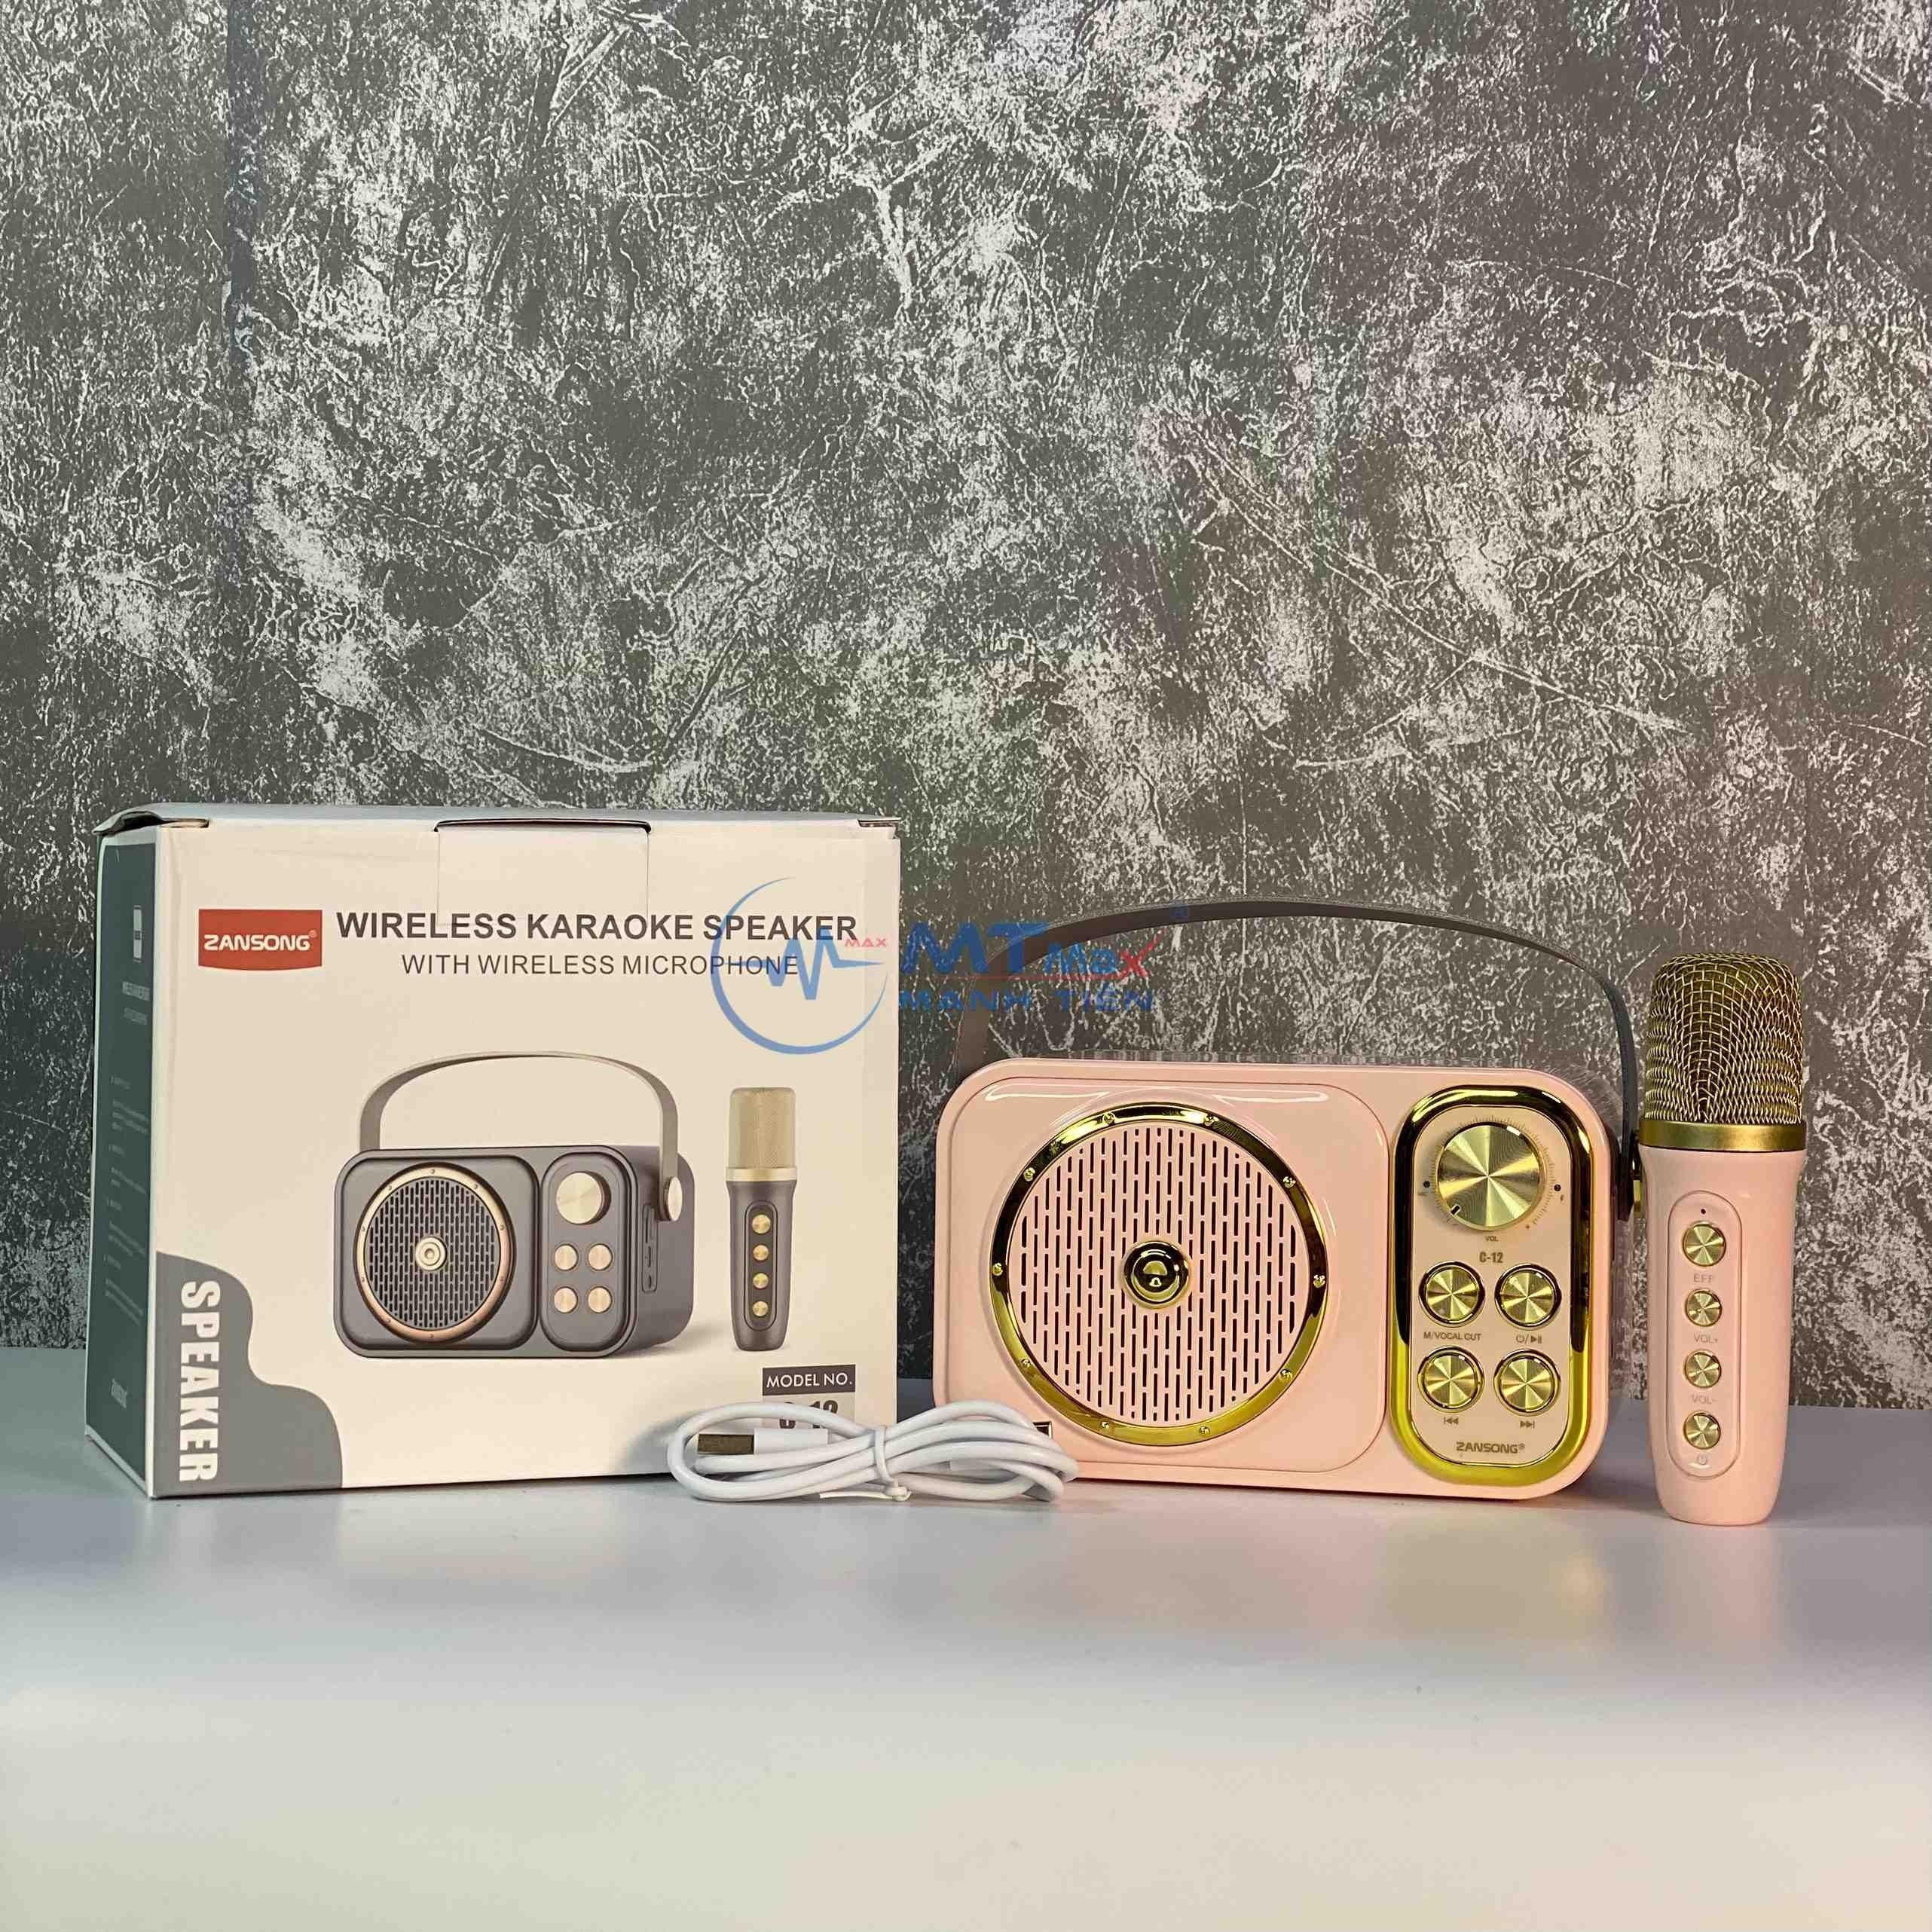 Loa Karaoke Zansong C12 - Kèm 1 Micro Không Dây. Kiểu dáng mini siêu kute, màu sắc bắt mắt. Mặt trước có bộ âm trầm được bảo vệ bởi lưới kim loại. Có cổng kết nối AUX, USB, thẻ TF và tích hợp Bluetooth 5.0